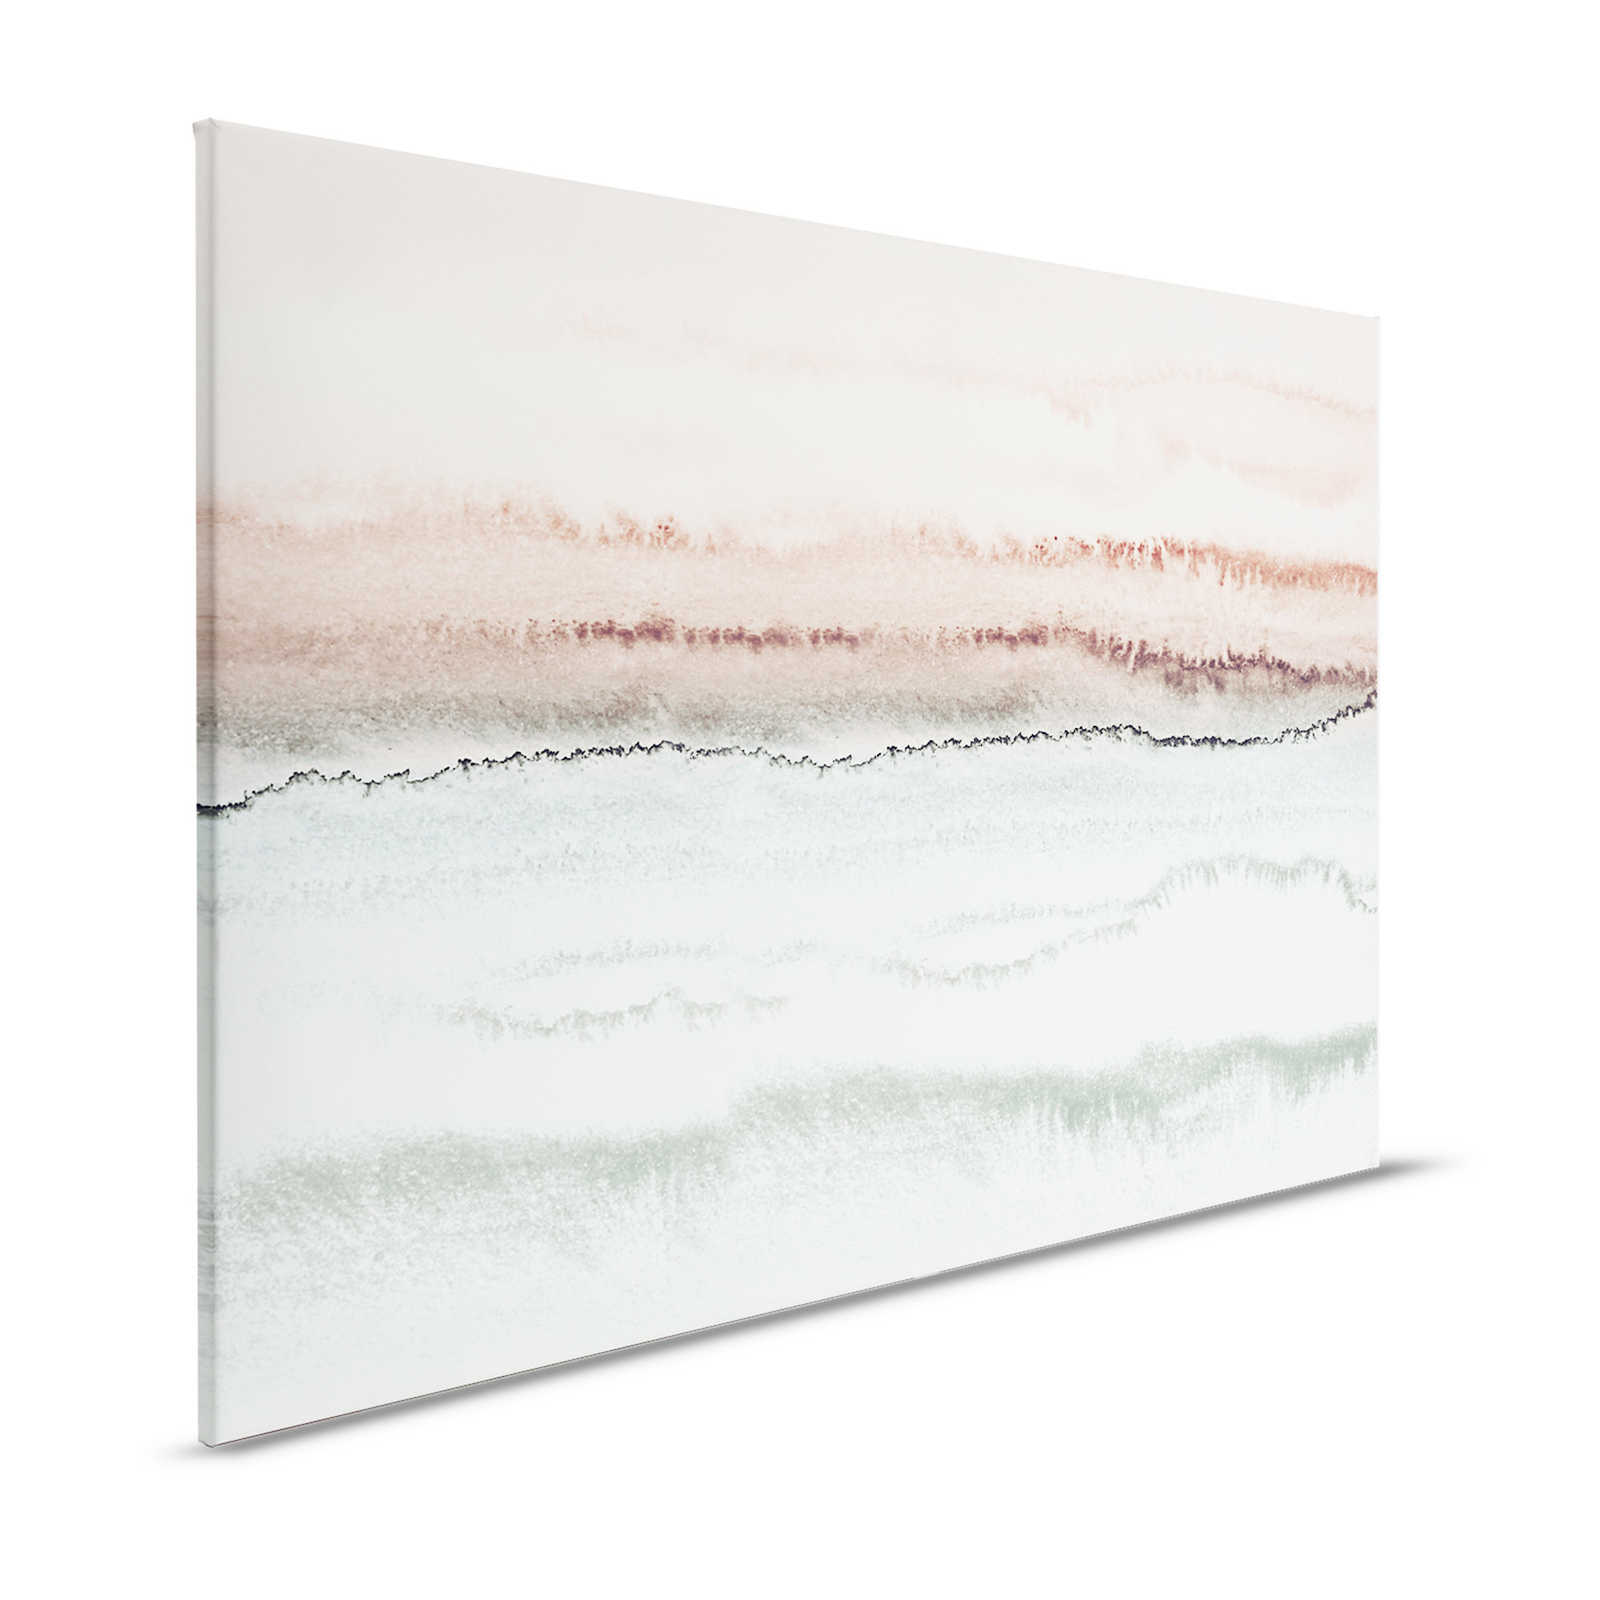 Aquarelle sur toile avec paysage abstrait & dégradé - 1,20 m x 0,80 m
